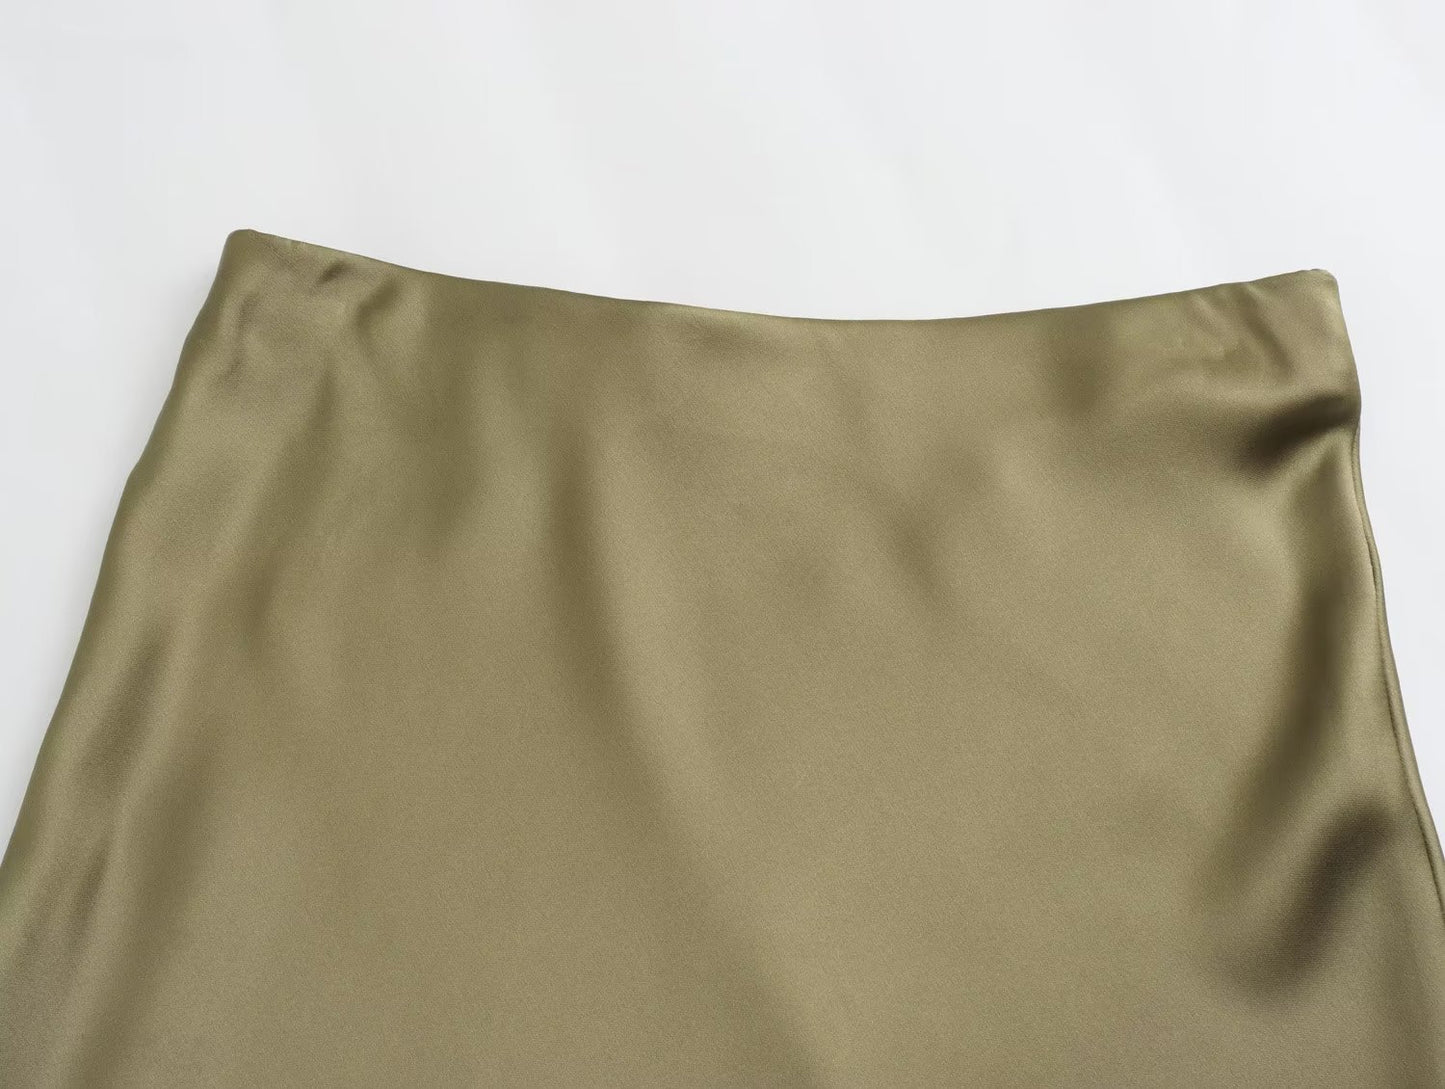 Women's Fashionable Silk Satin High Waist Skirt